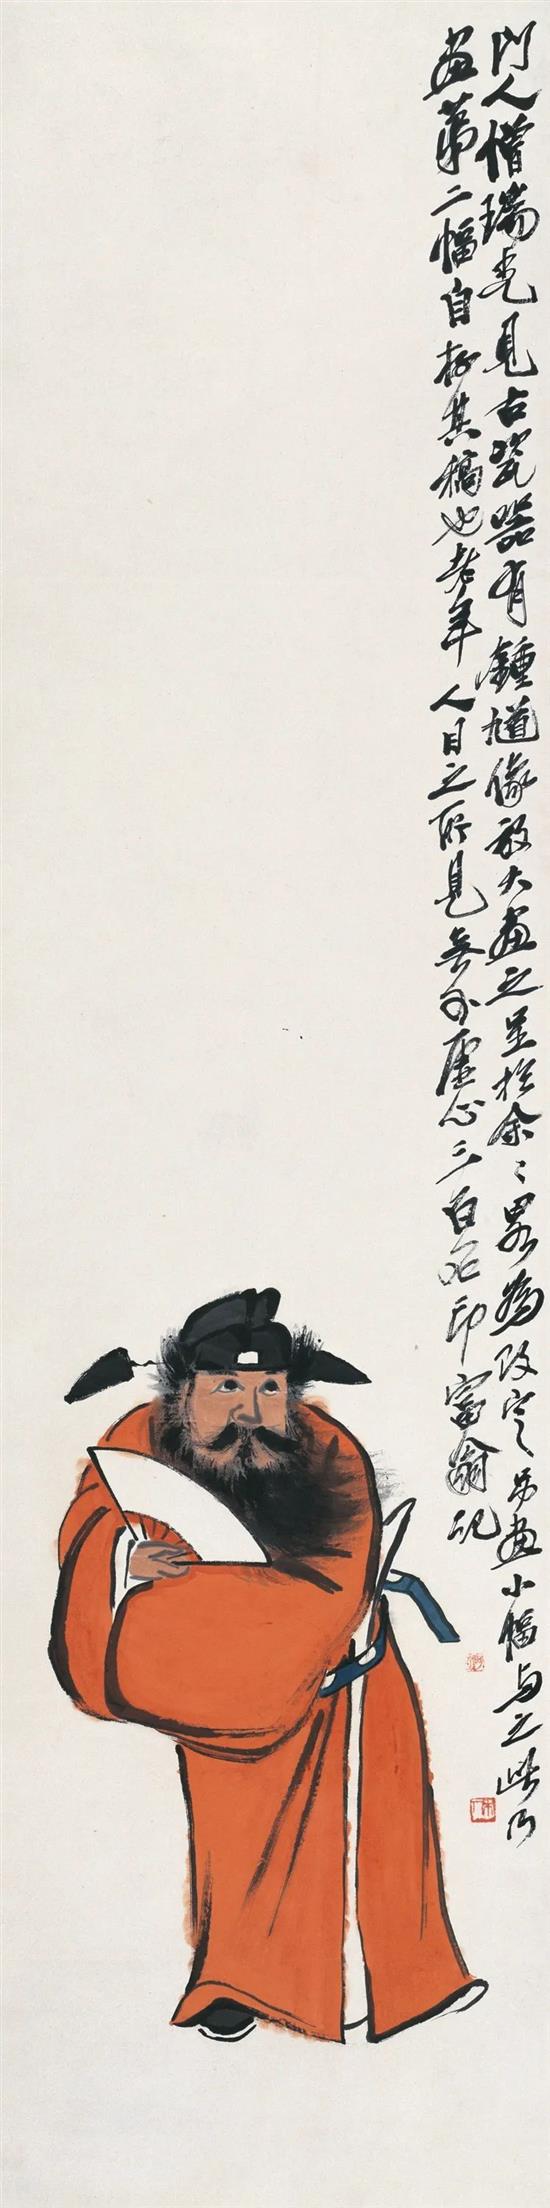 《钟馗》 齐白石 轴 纸本 设色 133.5×34cm 无年款 北京画院藏